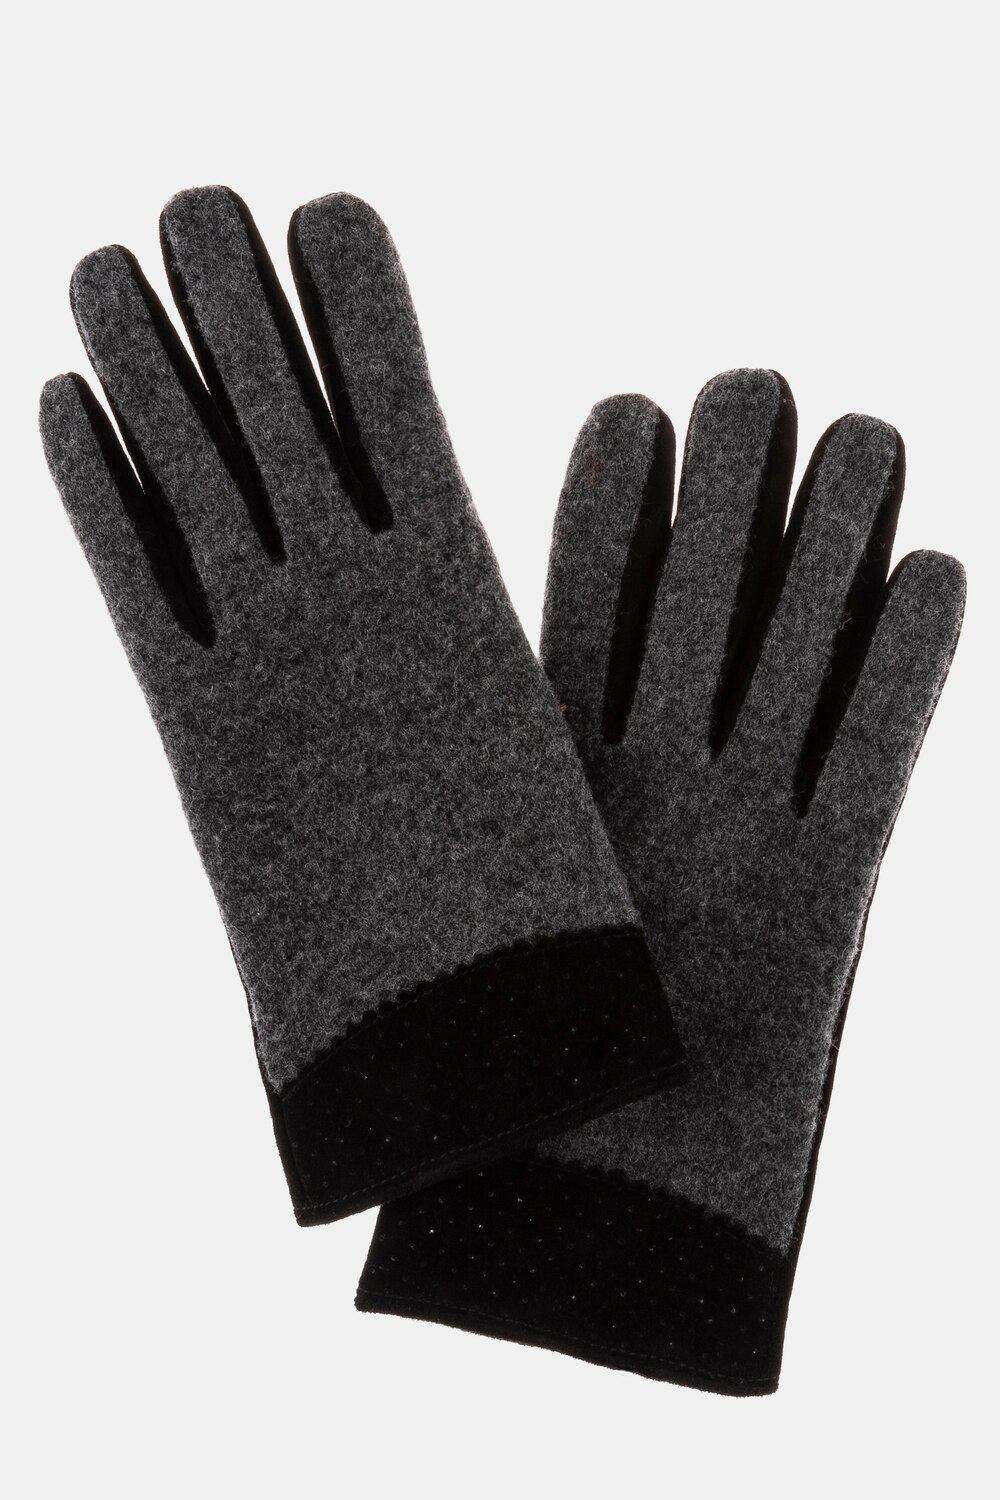 Grote Maten handschoenen, Dames, zwart, Maat: 58-64, Leer/Wol, Ulla Popken